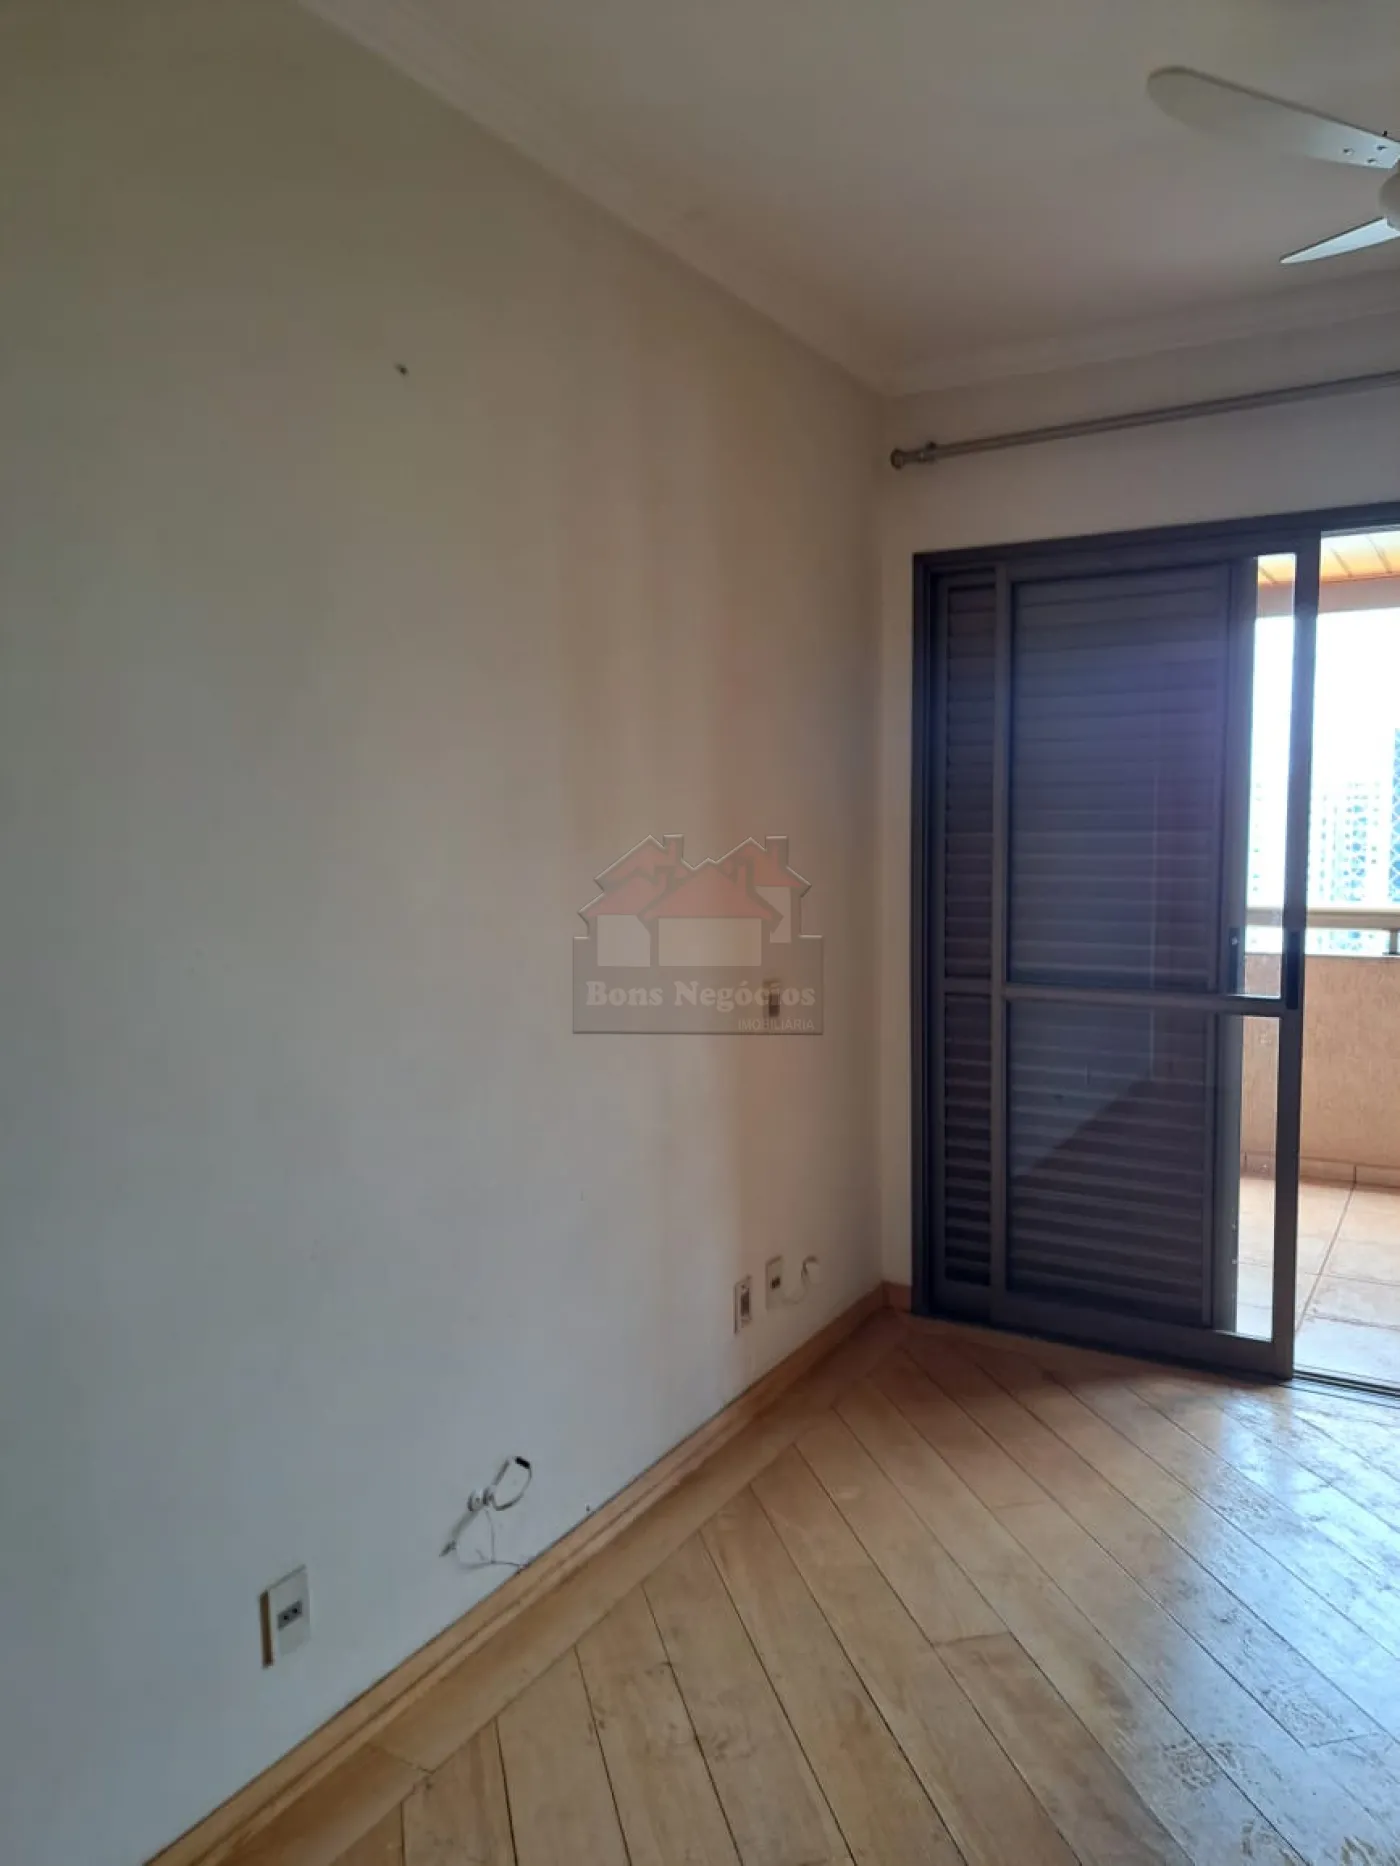 Comprar Apartamento / Padrão em Ribeirão Preto R$ 750.000,00 - Foto 15